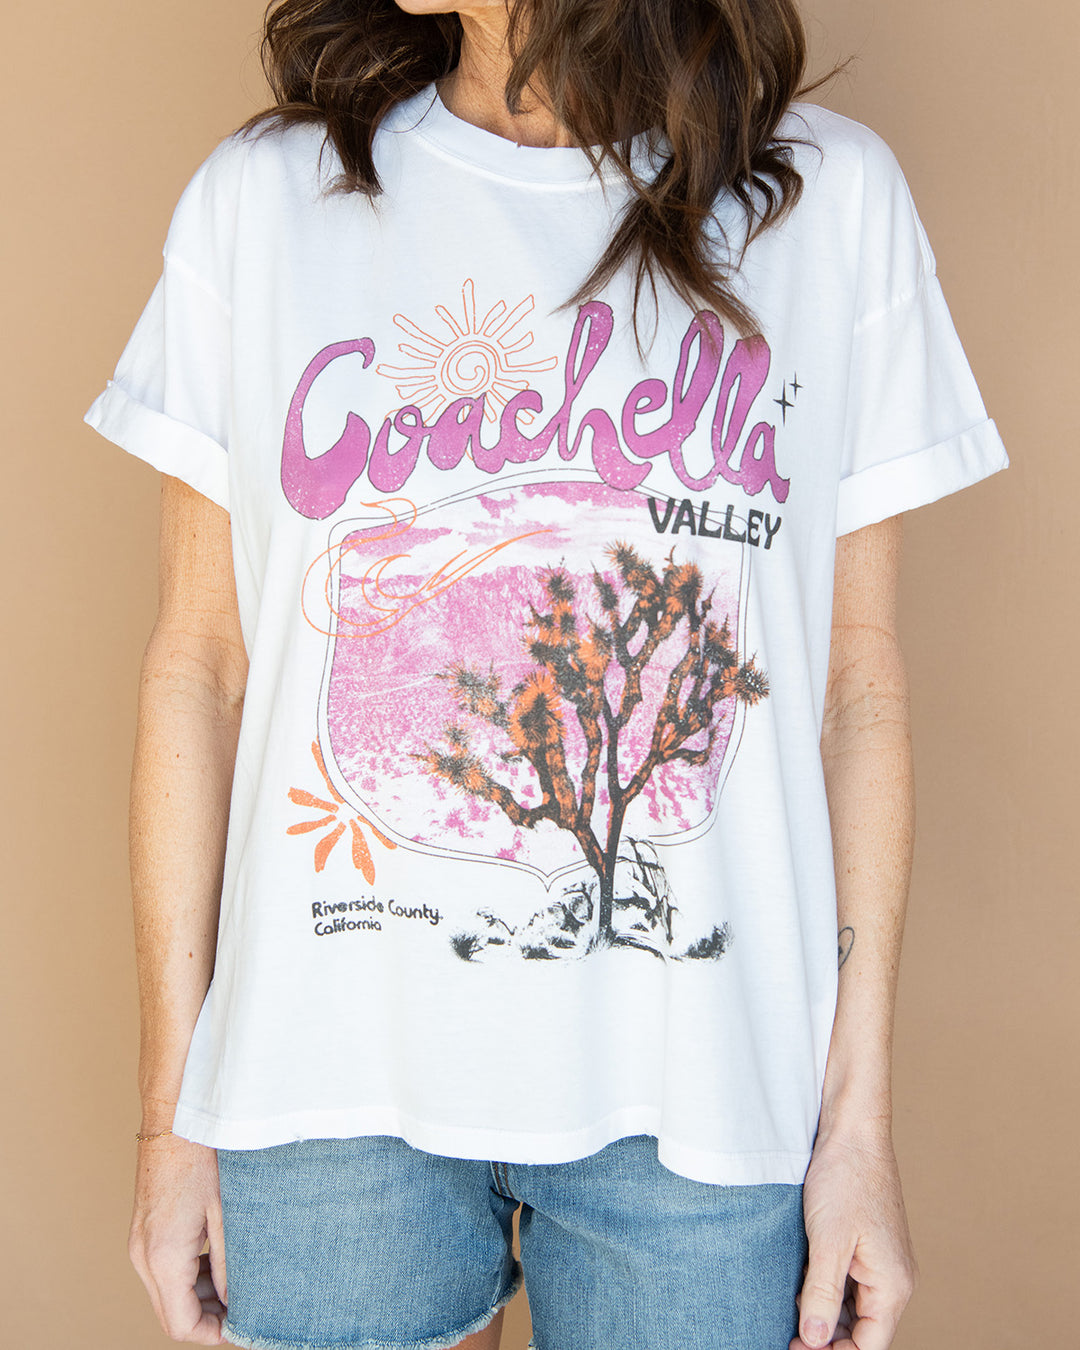 Coachella Valley Tee